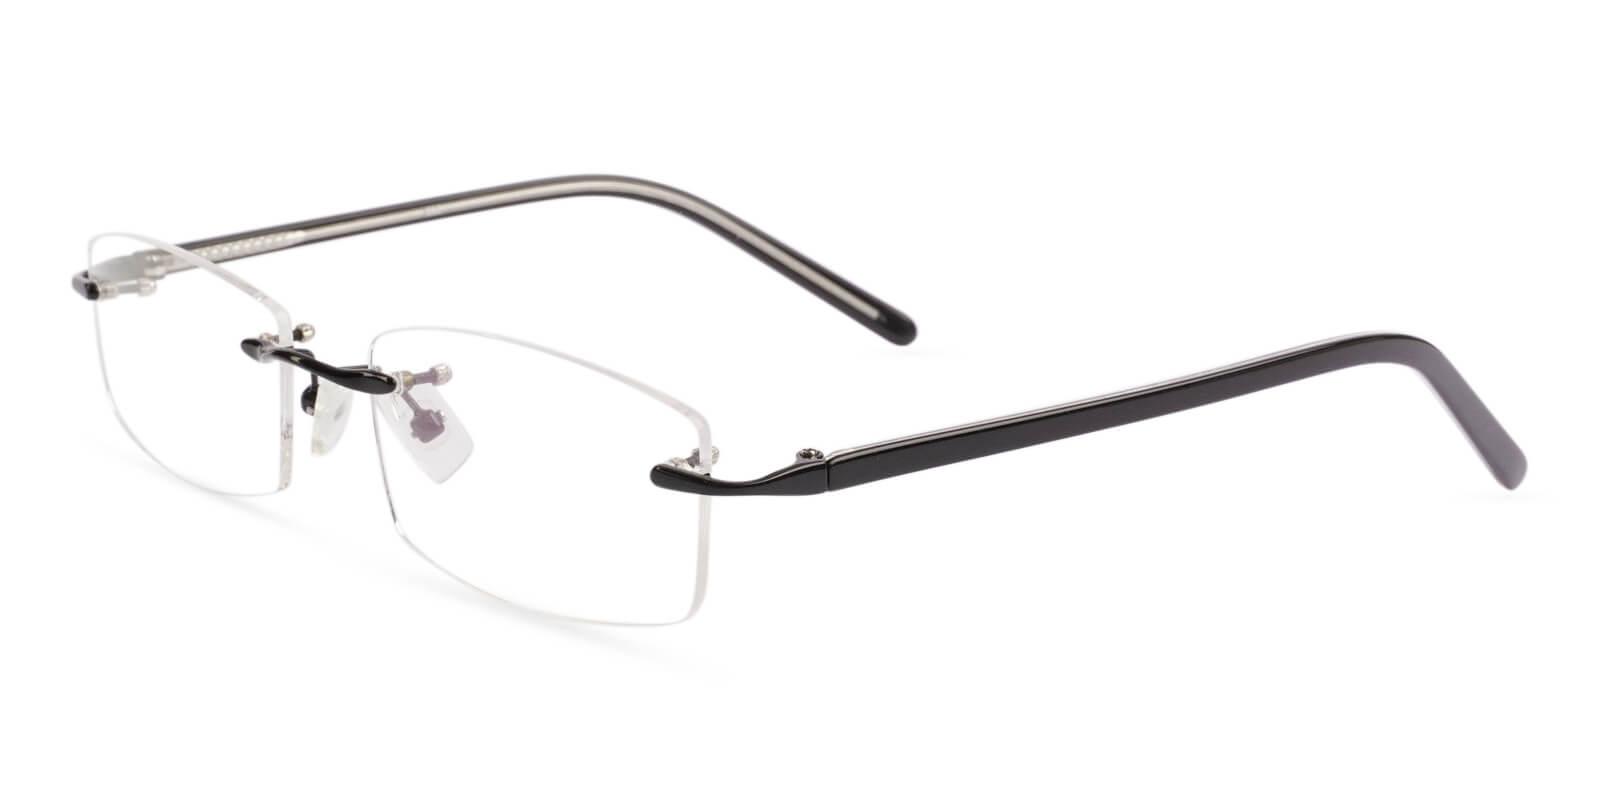 Lucas Black Metal Eyeglasses , NosePads Frames from ABBE Glasses